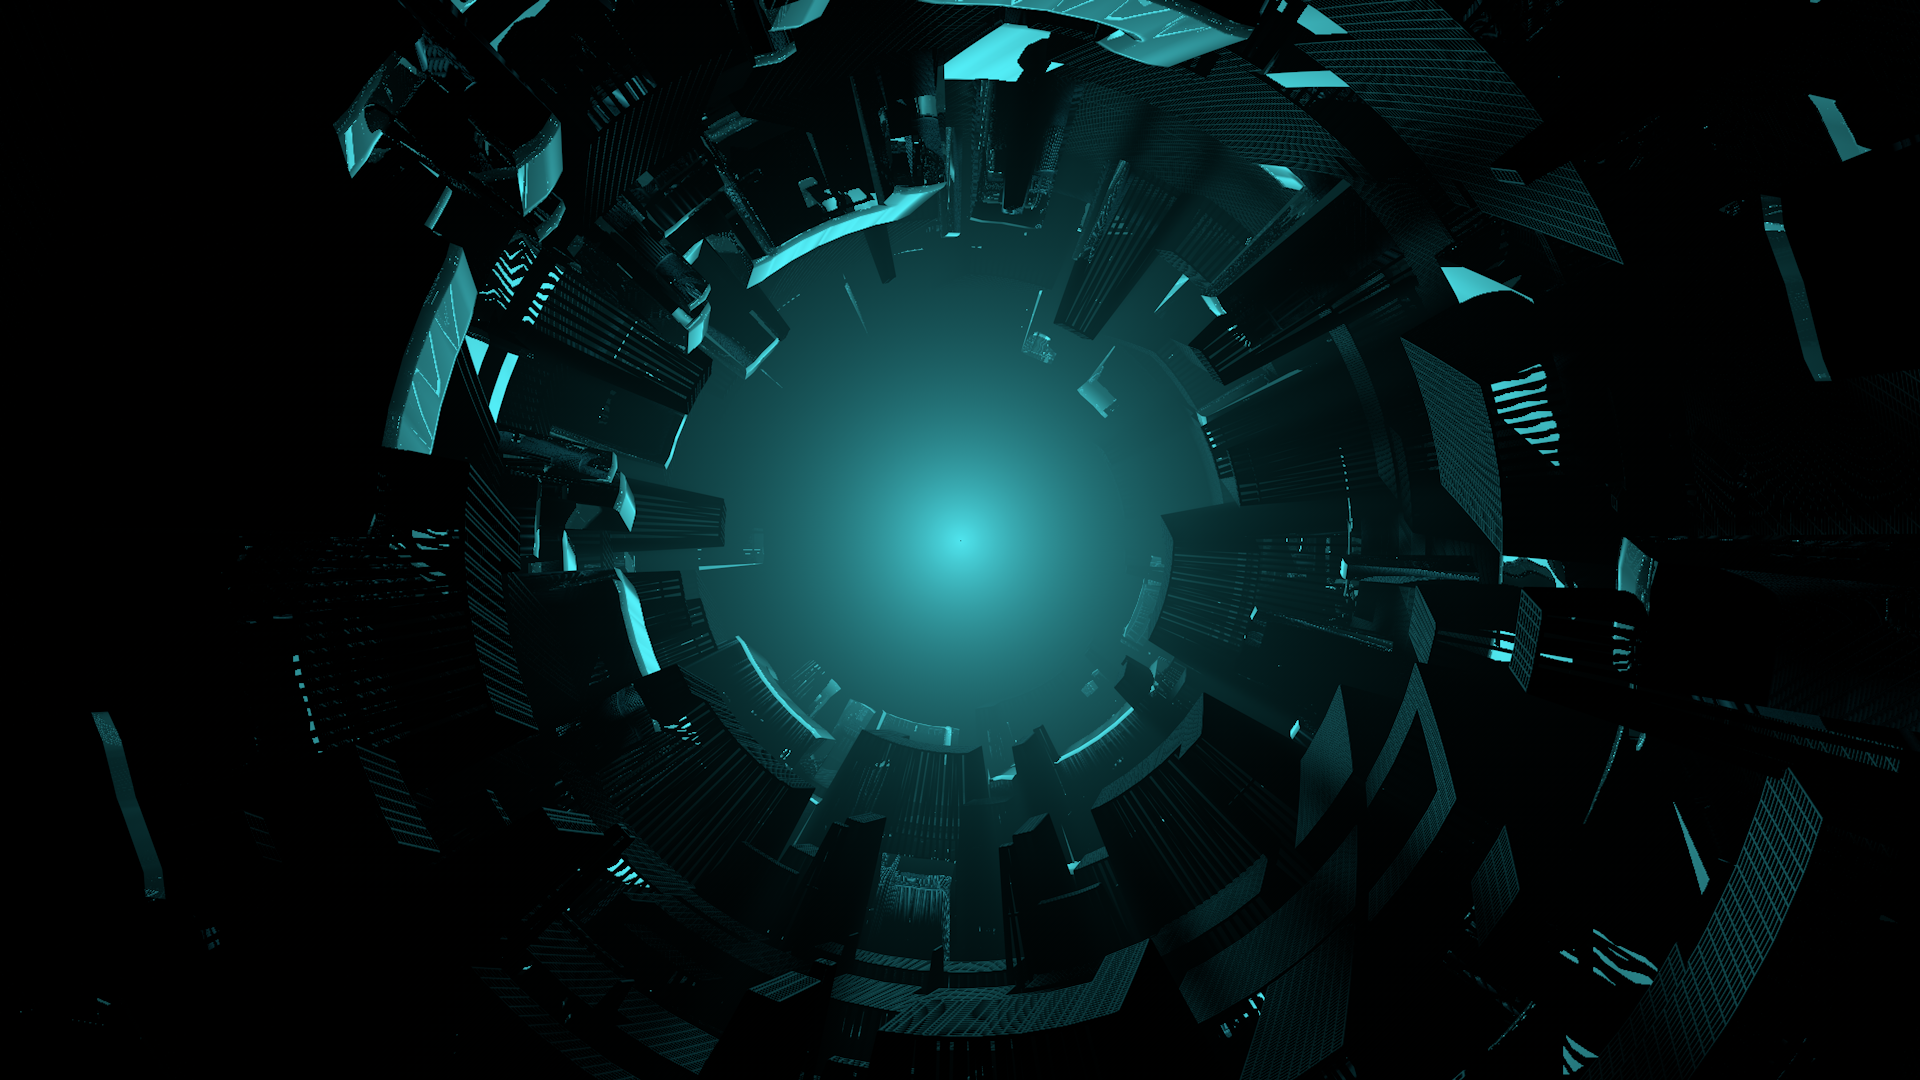 Khám phá Sci-Fi Tunnel cực kì mãn nhãn với đường hầm độc đáo, mang đến cho bạn một cảm giác thật sự như đang bước chân vào một thế giới khoa học viễn tưởng đầy hấp dẫn và bí ẩn.